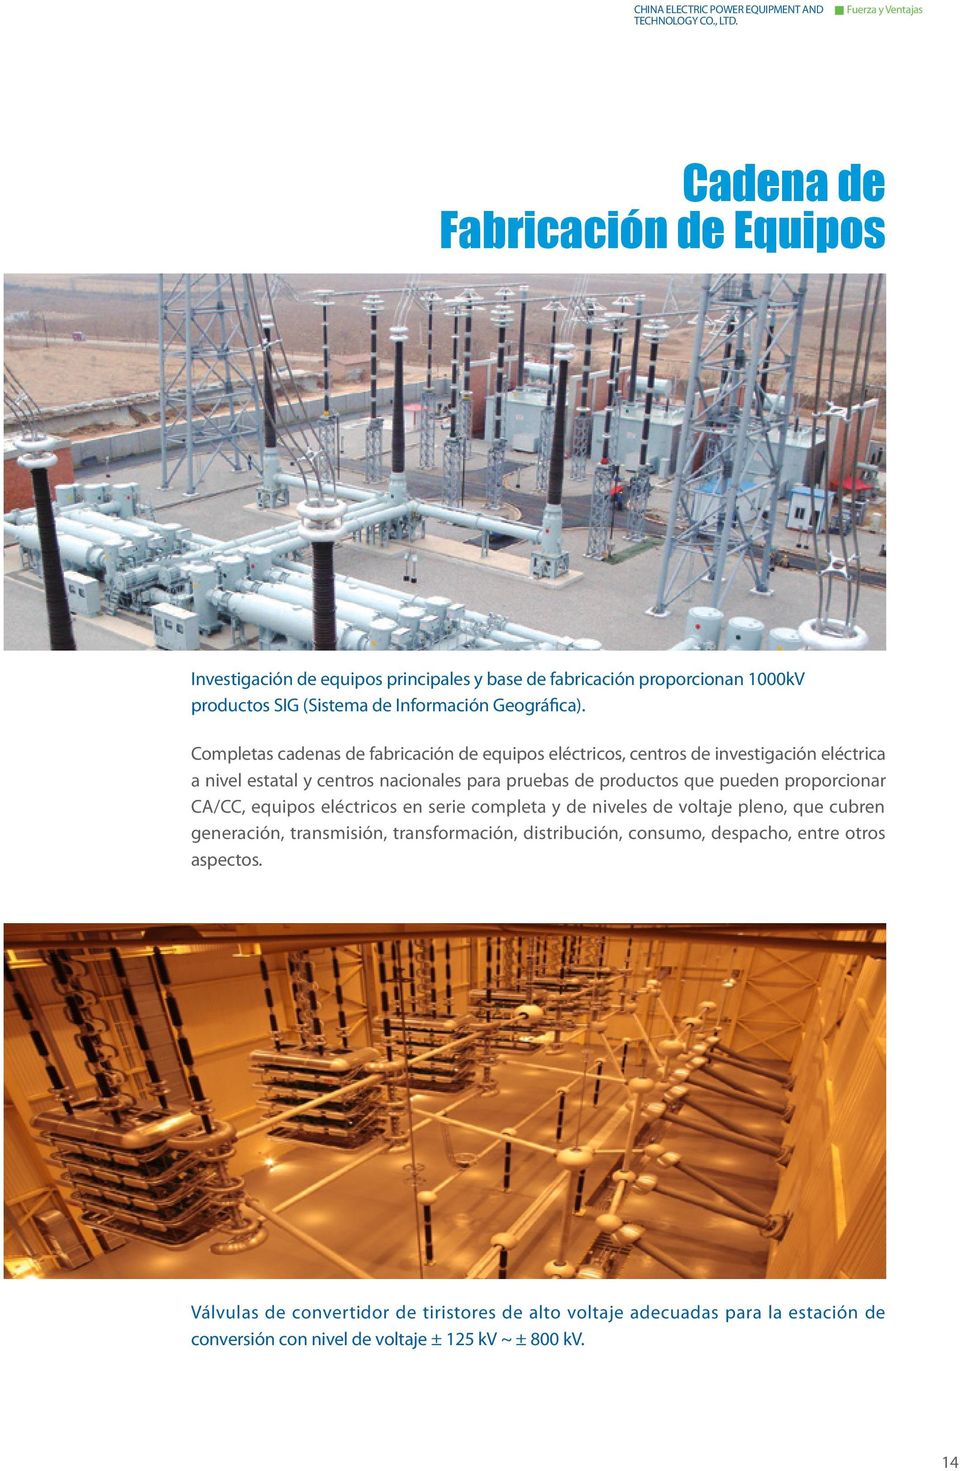 Completas cadenas de fabricación de equipos eléctricos, centros de investigación eléctrica a nivel estatal y centros nacionales para pruebas de productos que pueden proporcionar